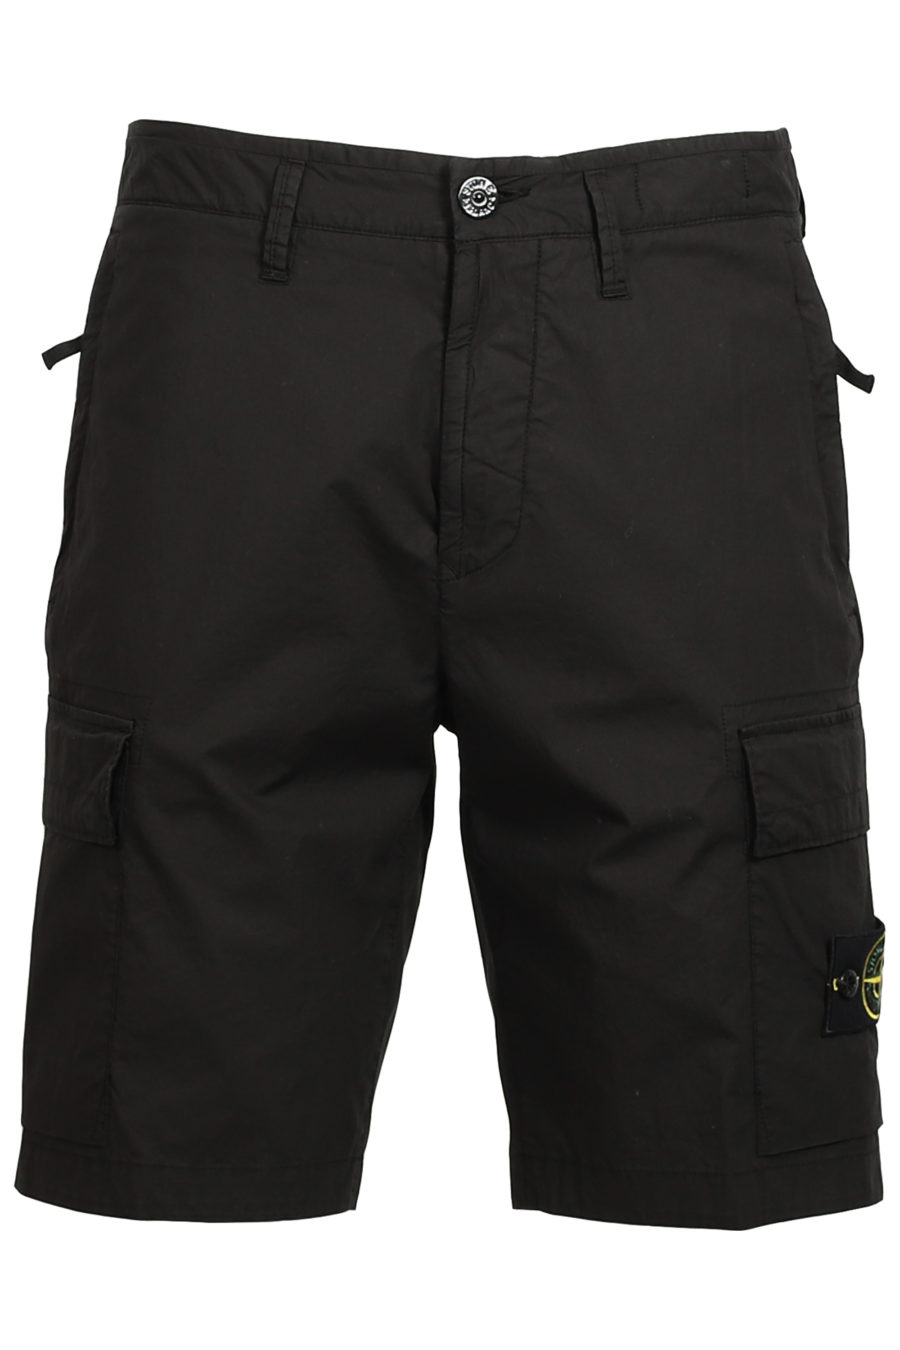 Pantalón corto negro - IMG 3752